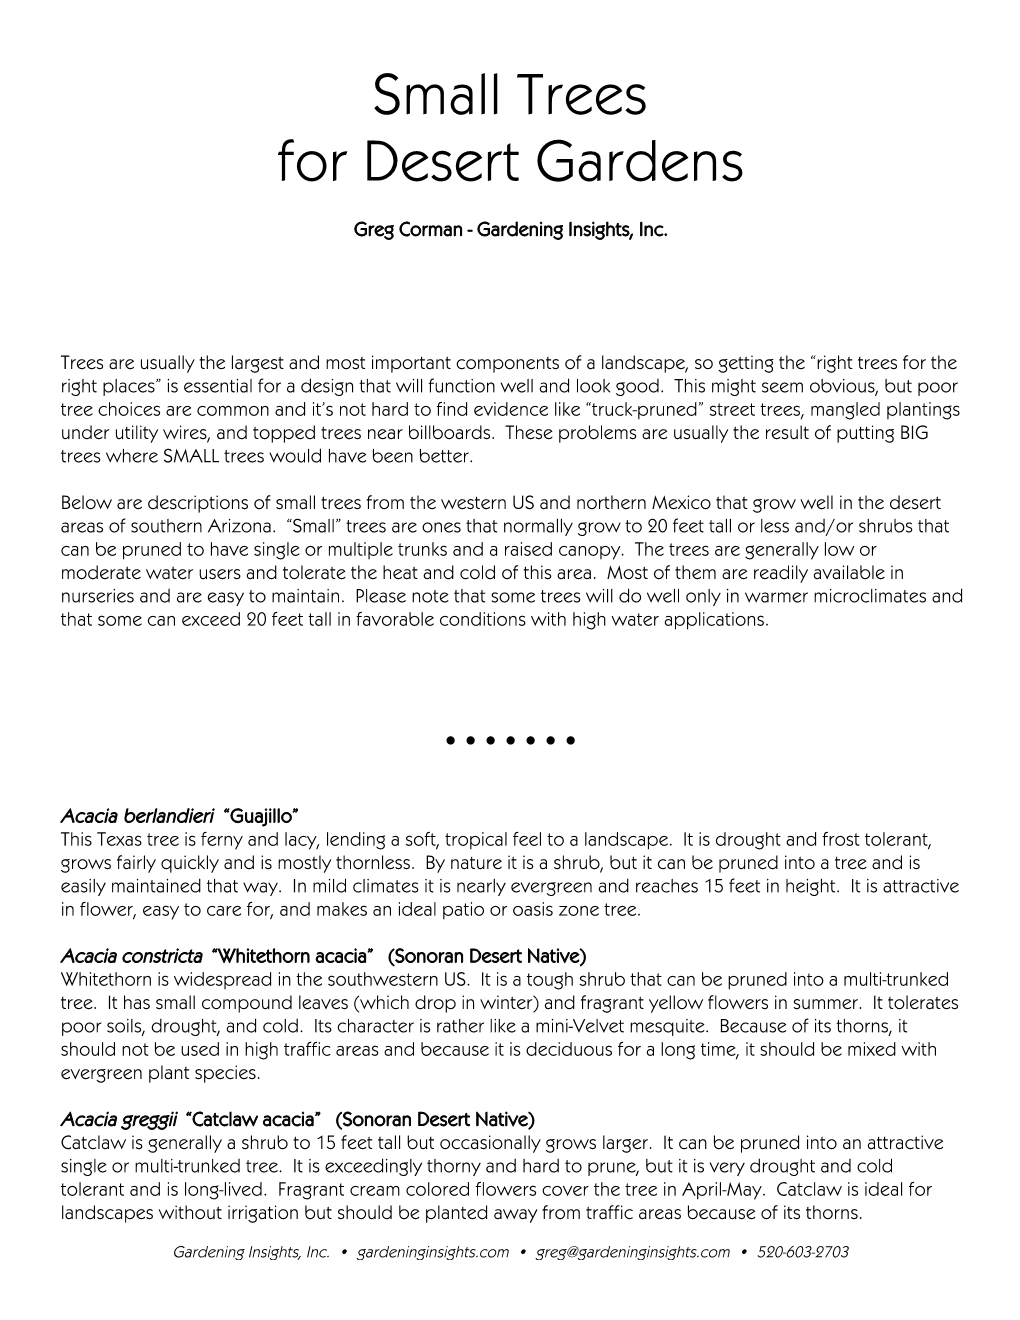 Small Trees for Desert Gardens